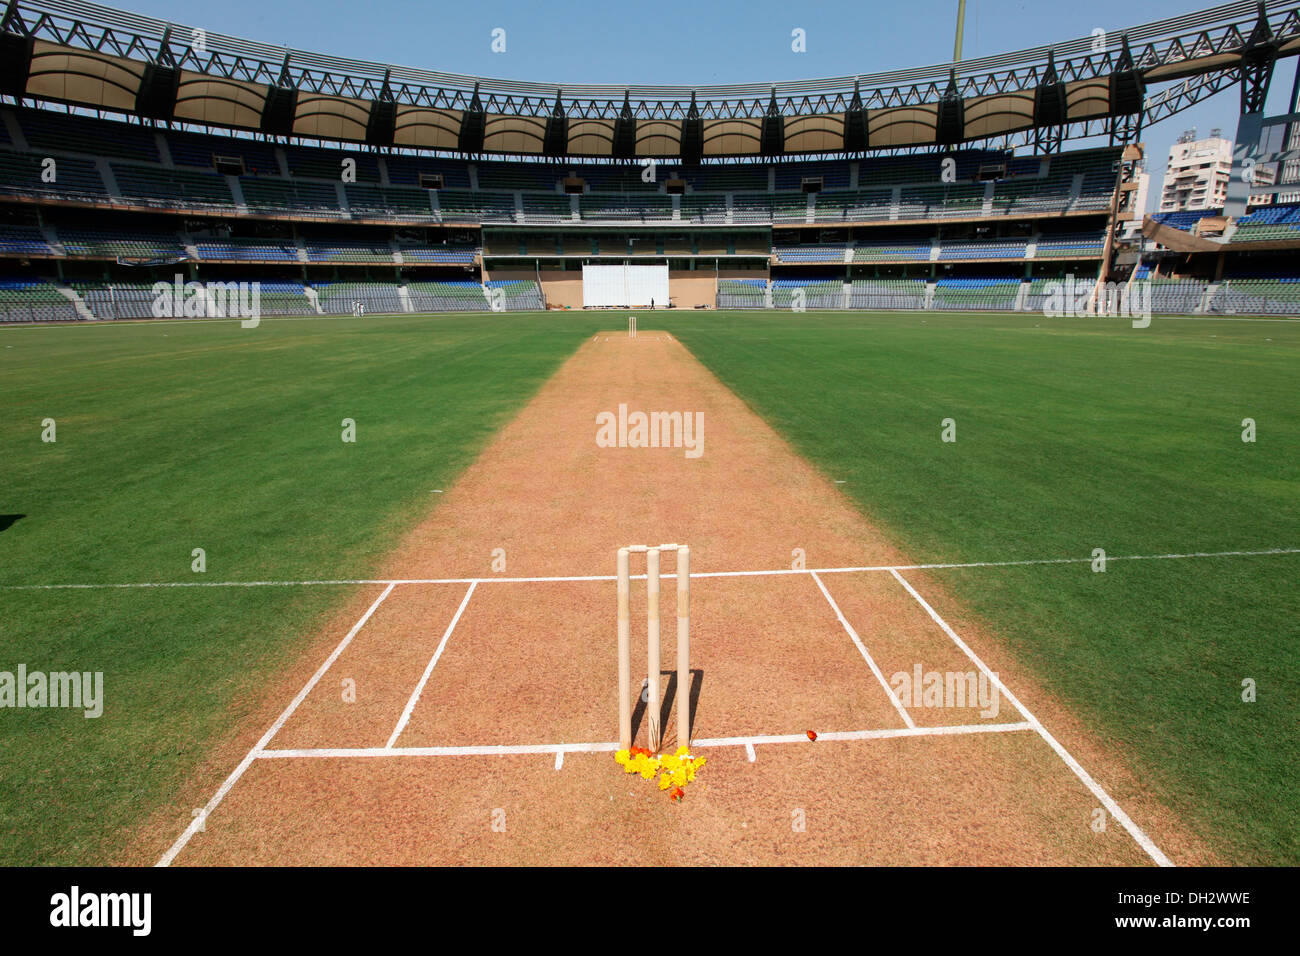 Cricket pitch with stumps Wankhede Stadium Bombay Mumbai Maharashtra India Asia Stock Photo